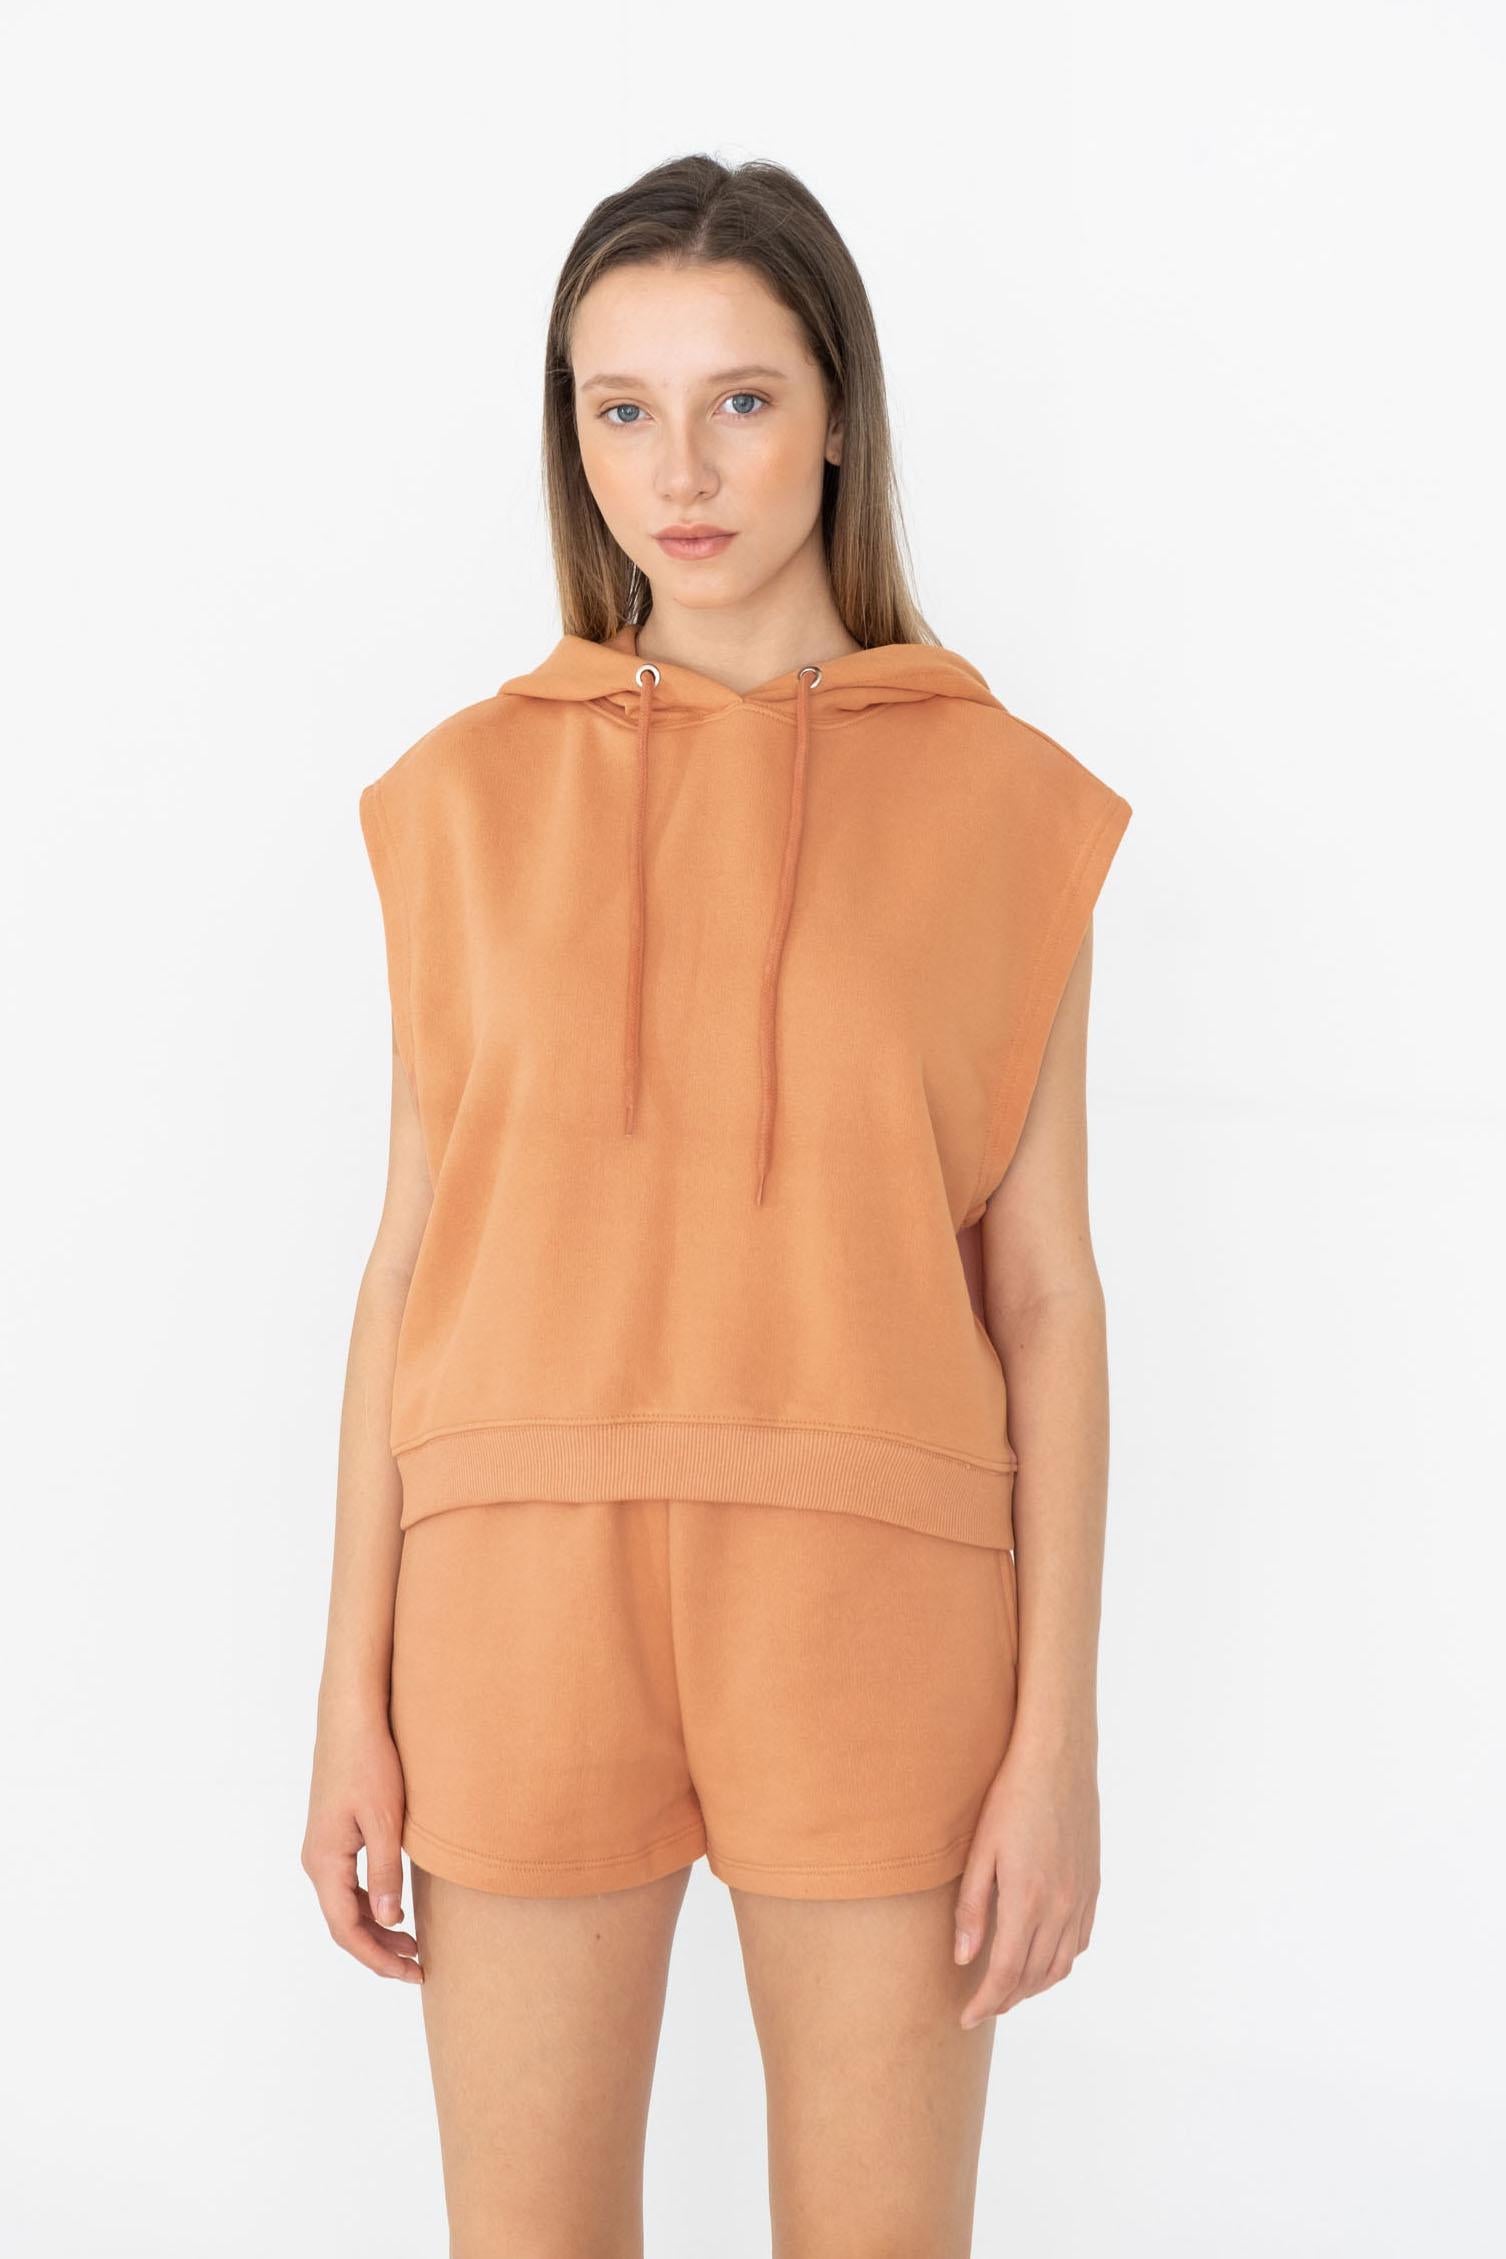 Image of Women's Hooded Orange Sweatshirt